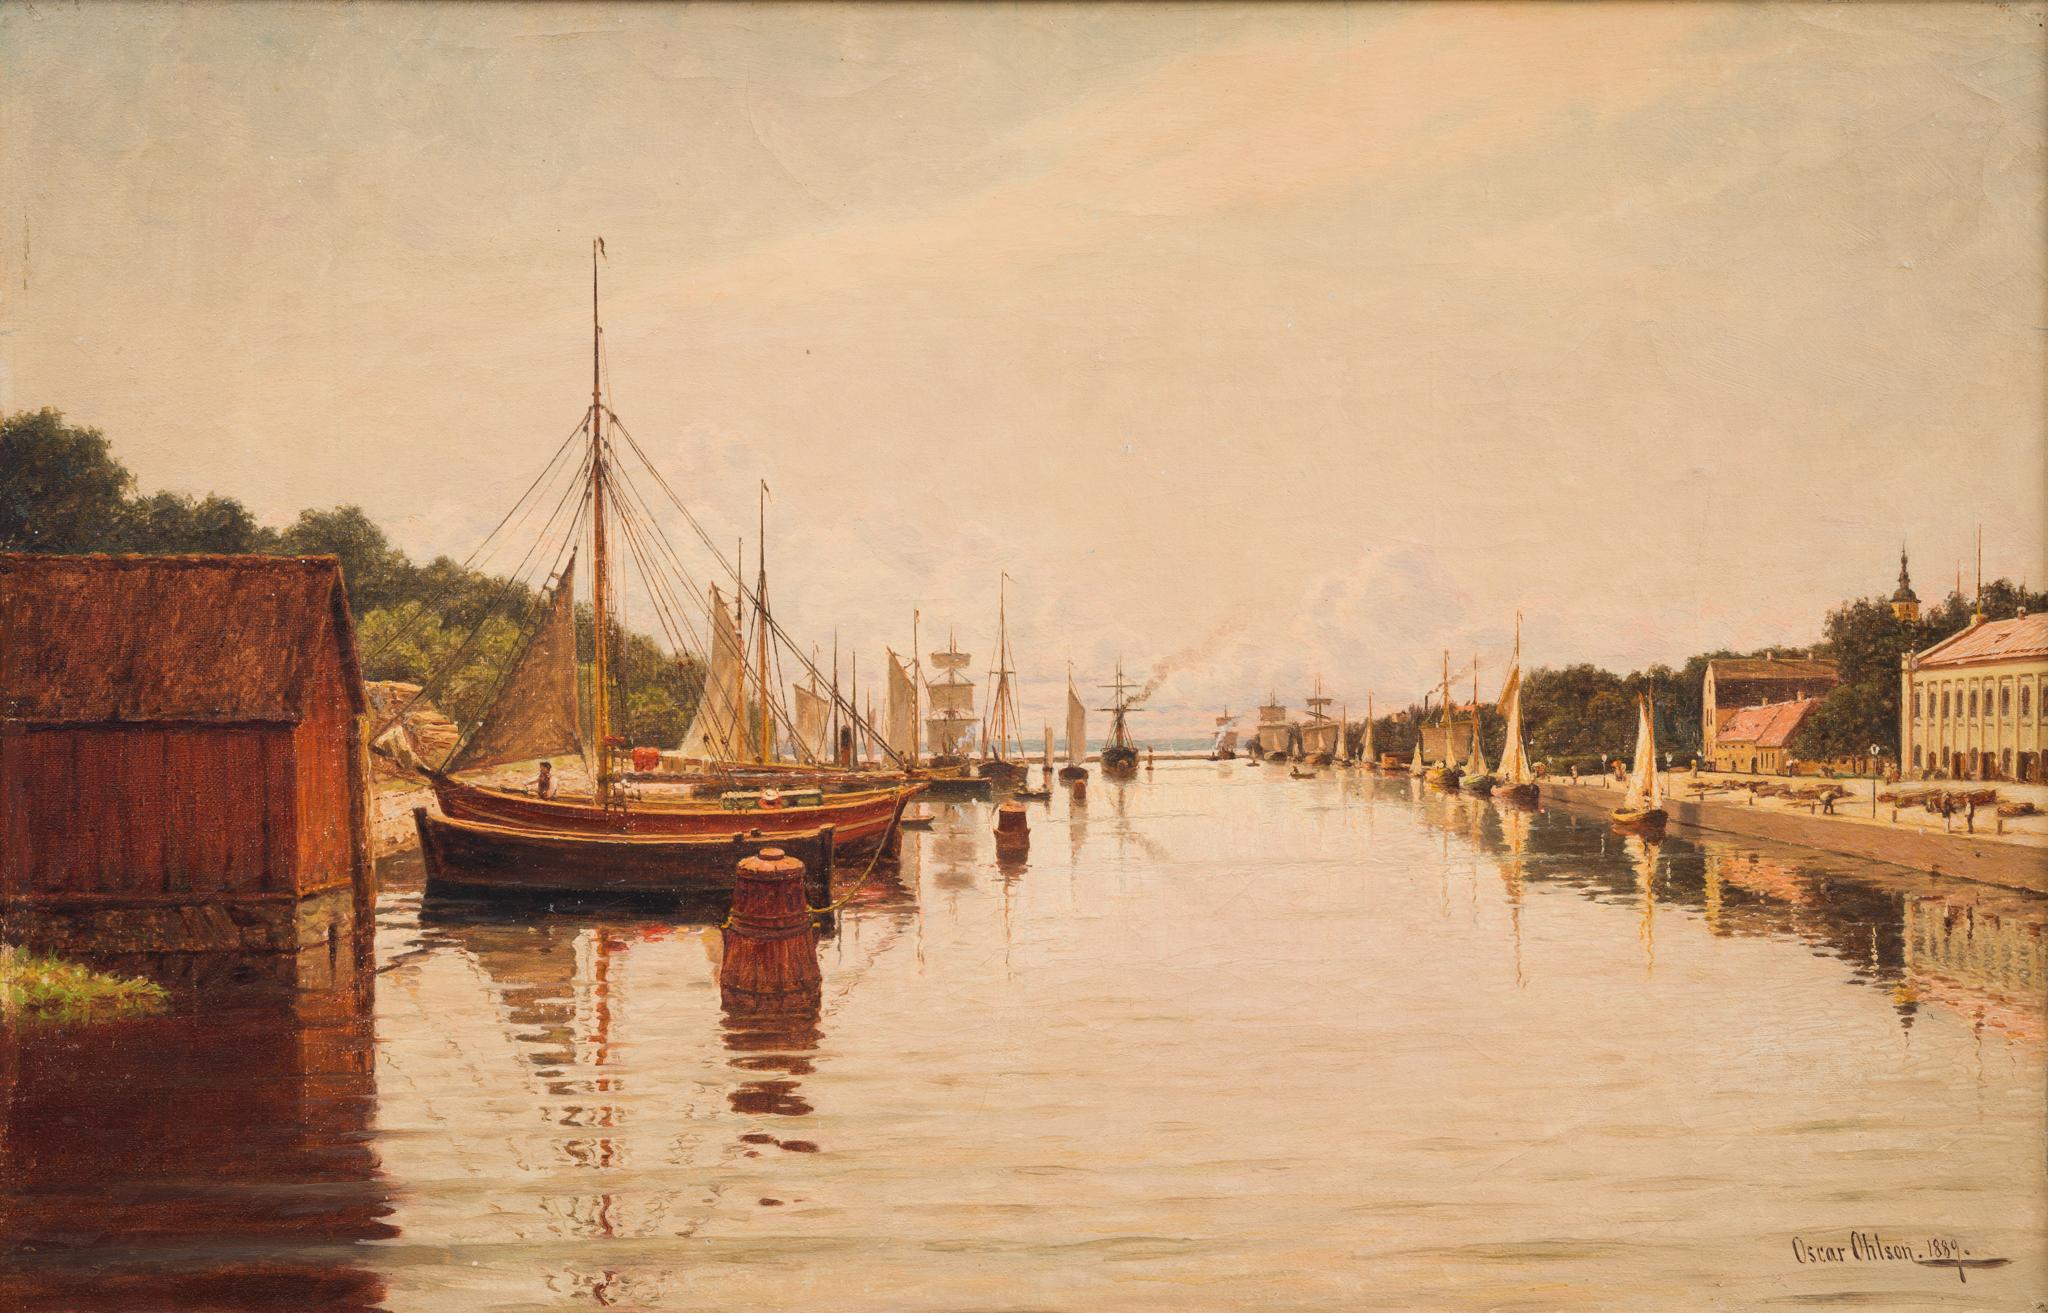 Der Hafen von Halmstad von Norden aus gesehen, 1889 (Realismus), Painting, von Oscar Ohlson